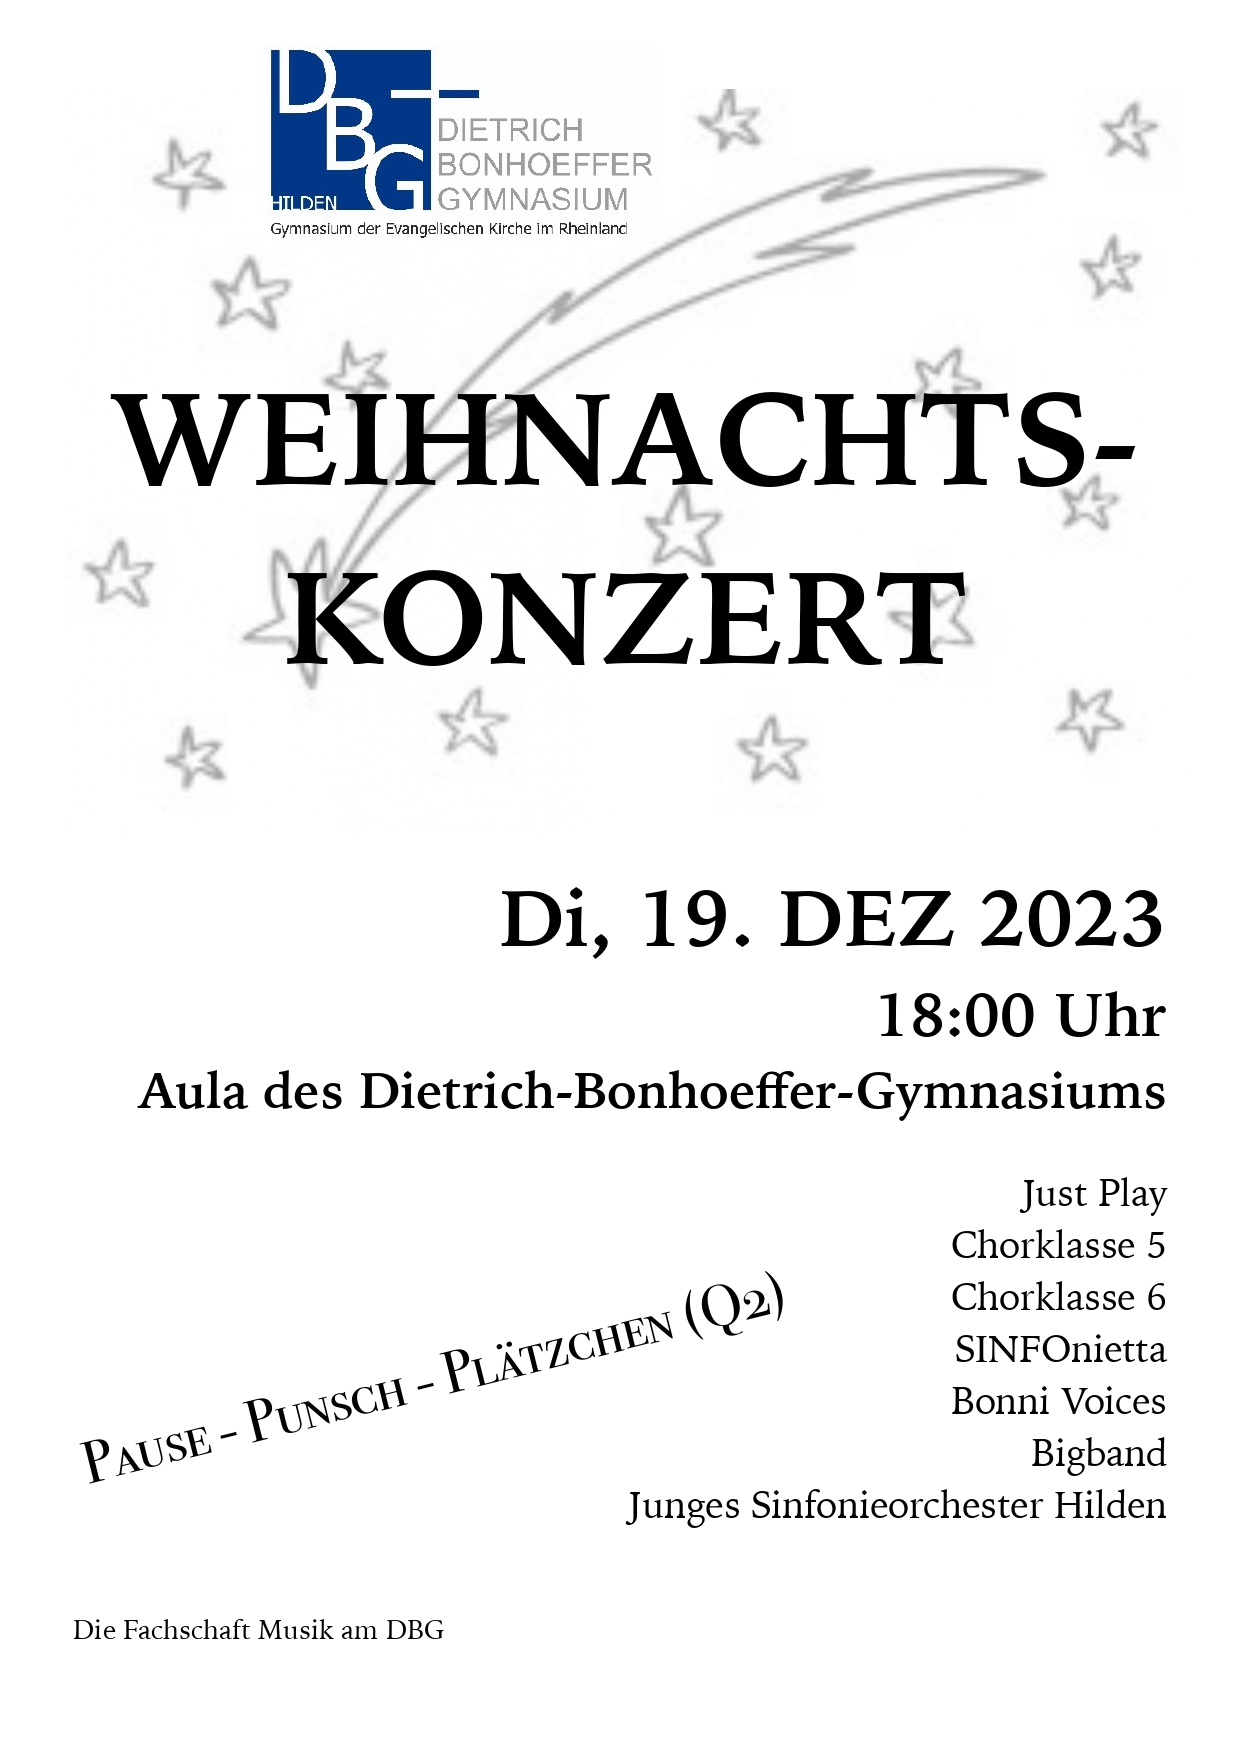 WKonzert Plakat 2023